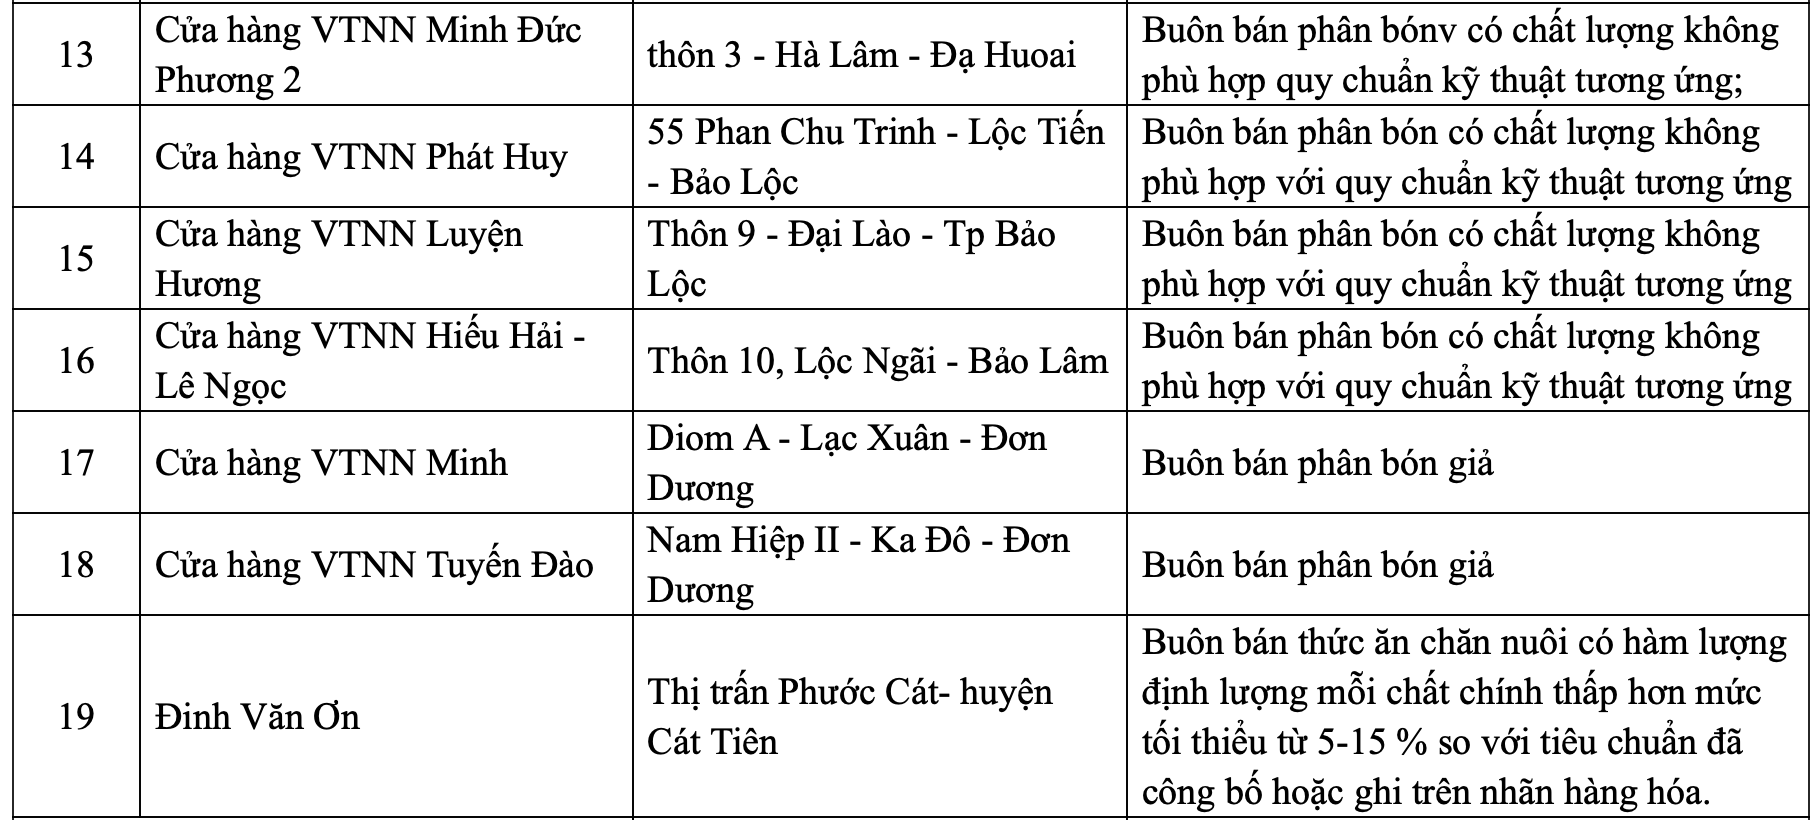 Danh sách một số cơ sở sản xuất, kinh doanh phân bón giả, kém chất lượng trong công bố của Sở NNPTNT Lâm Đồng.